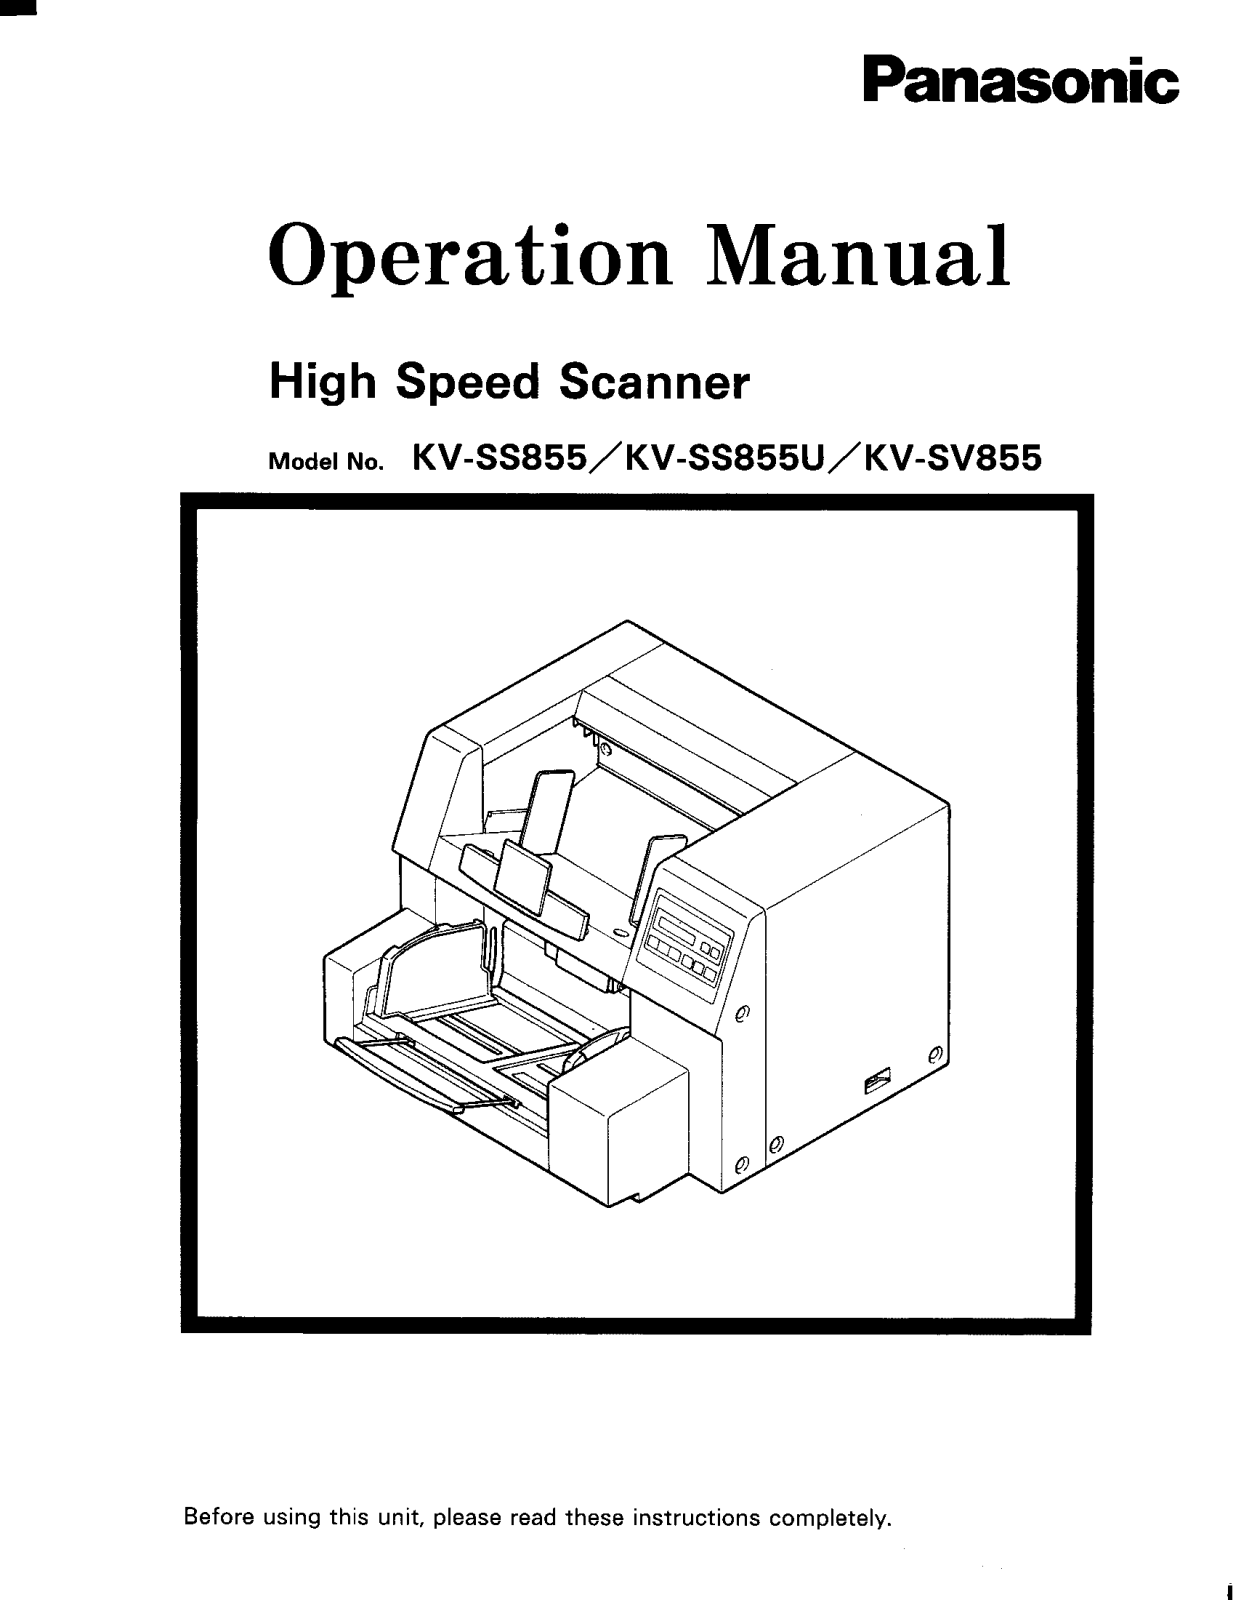 Panasonic kw-ss855 Operation Manual